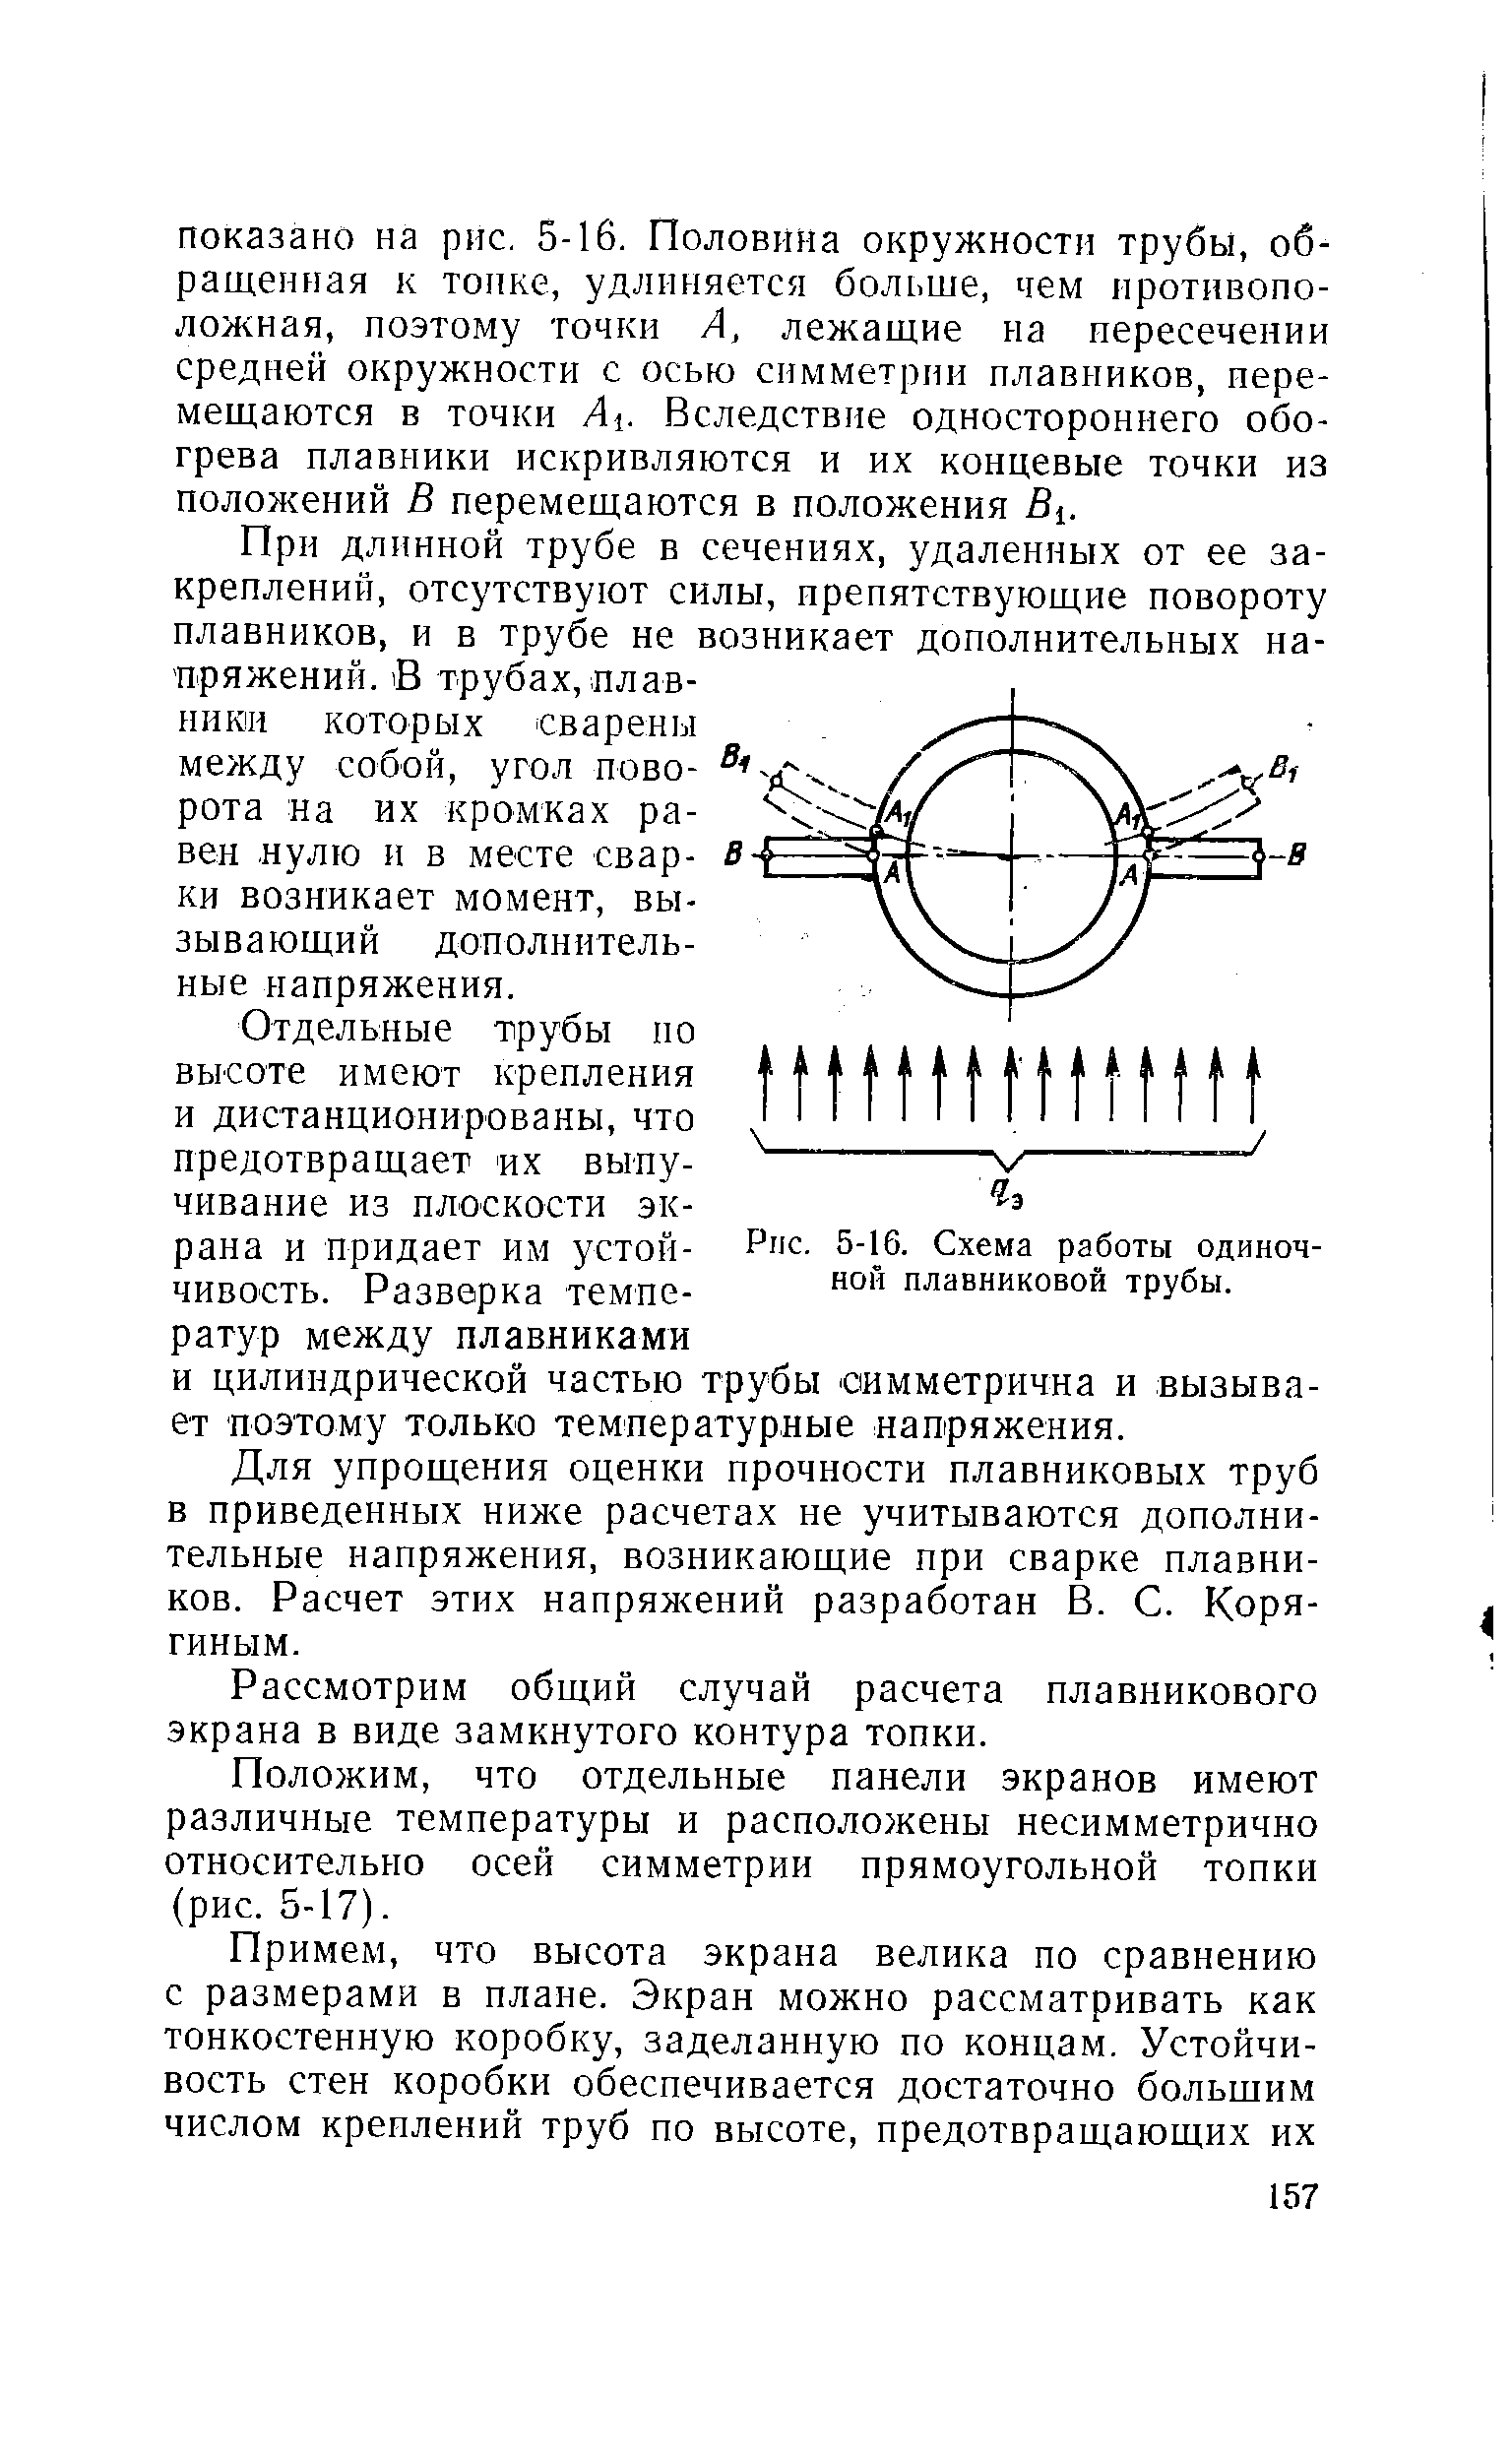 Рис. 5-16. Схема работы одиночной плавниковой трубы.
